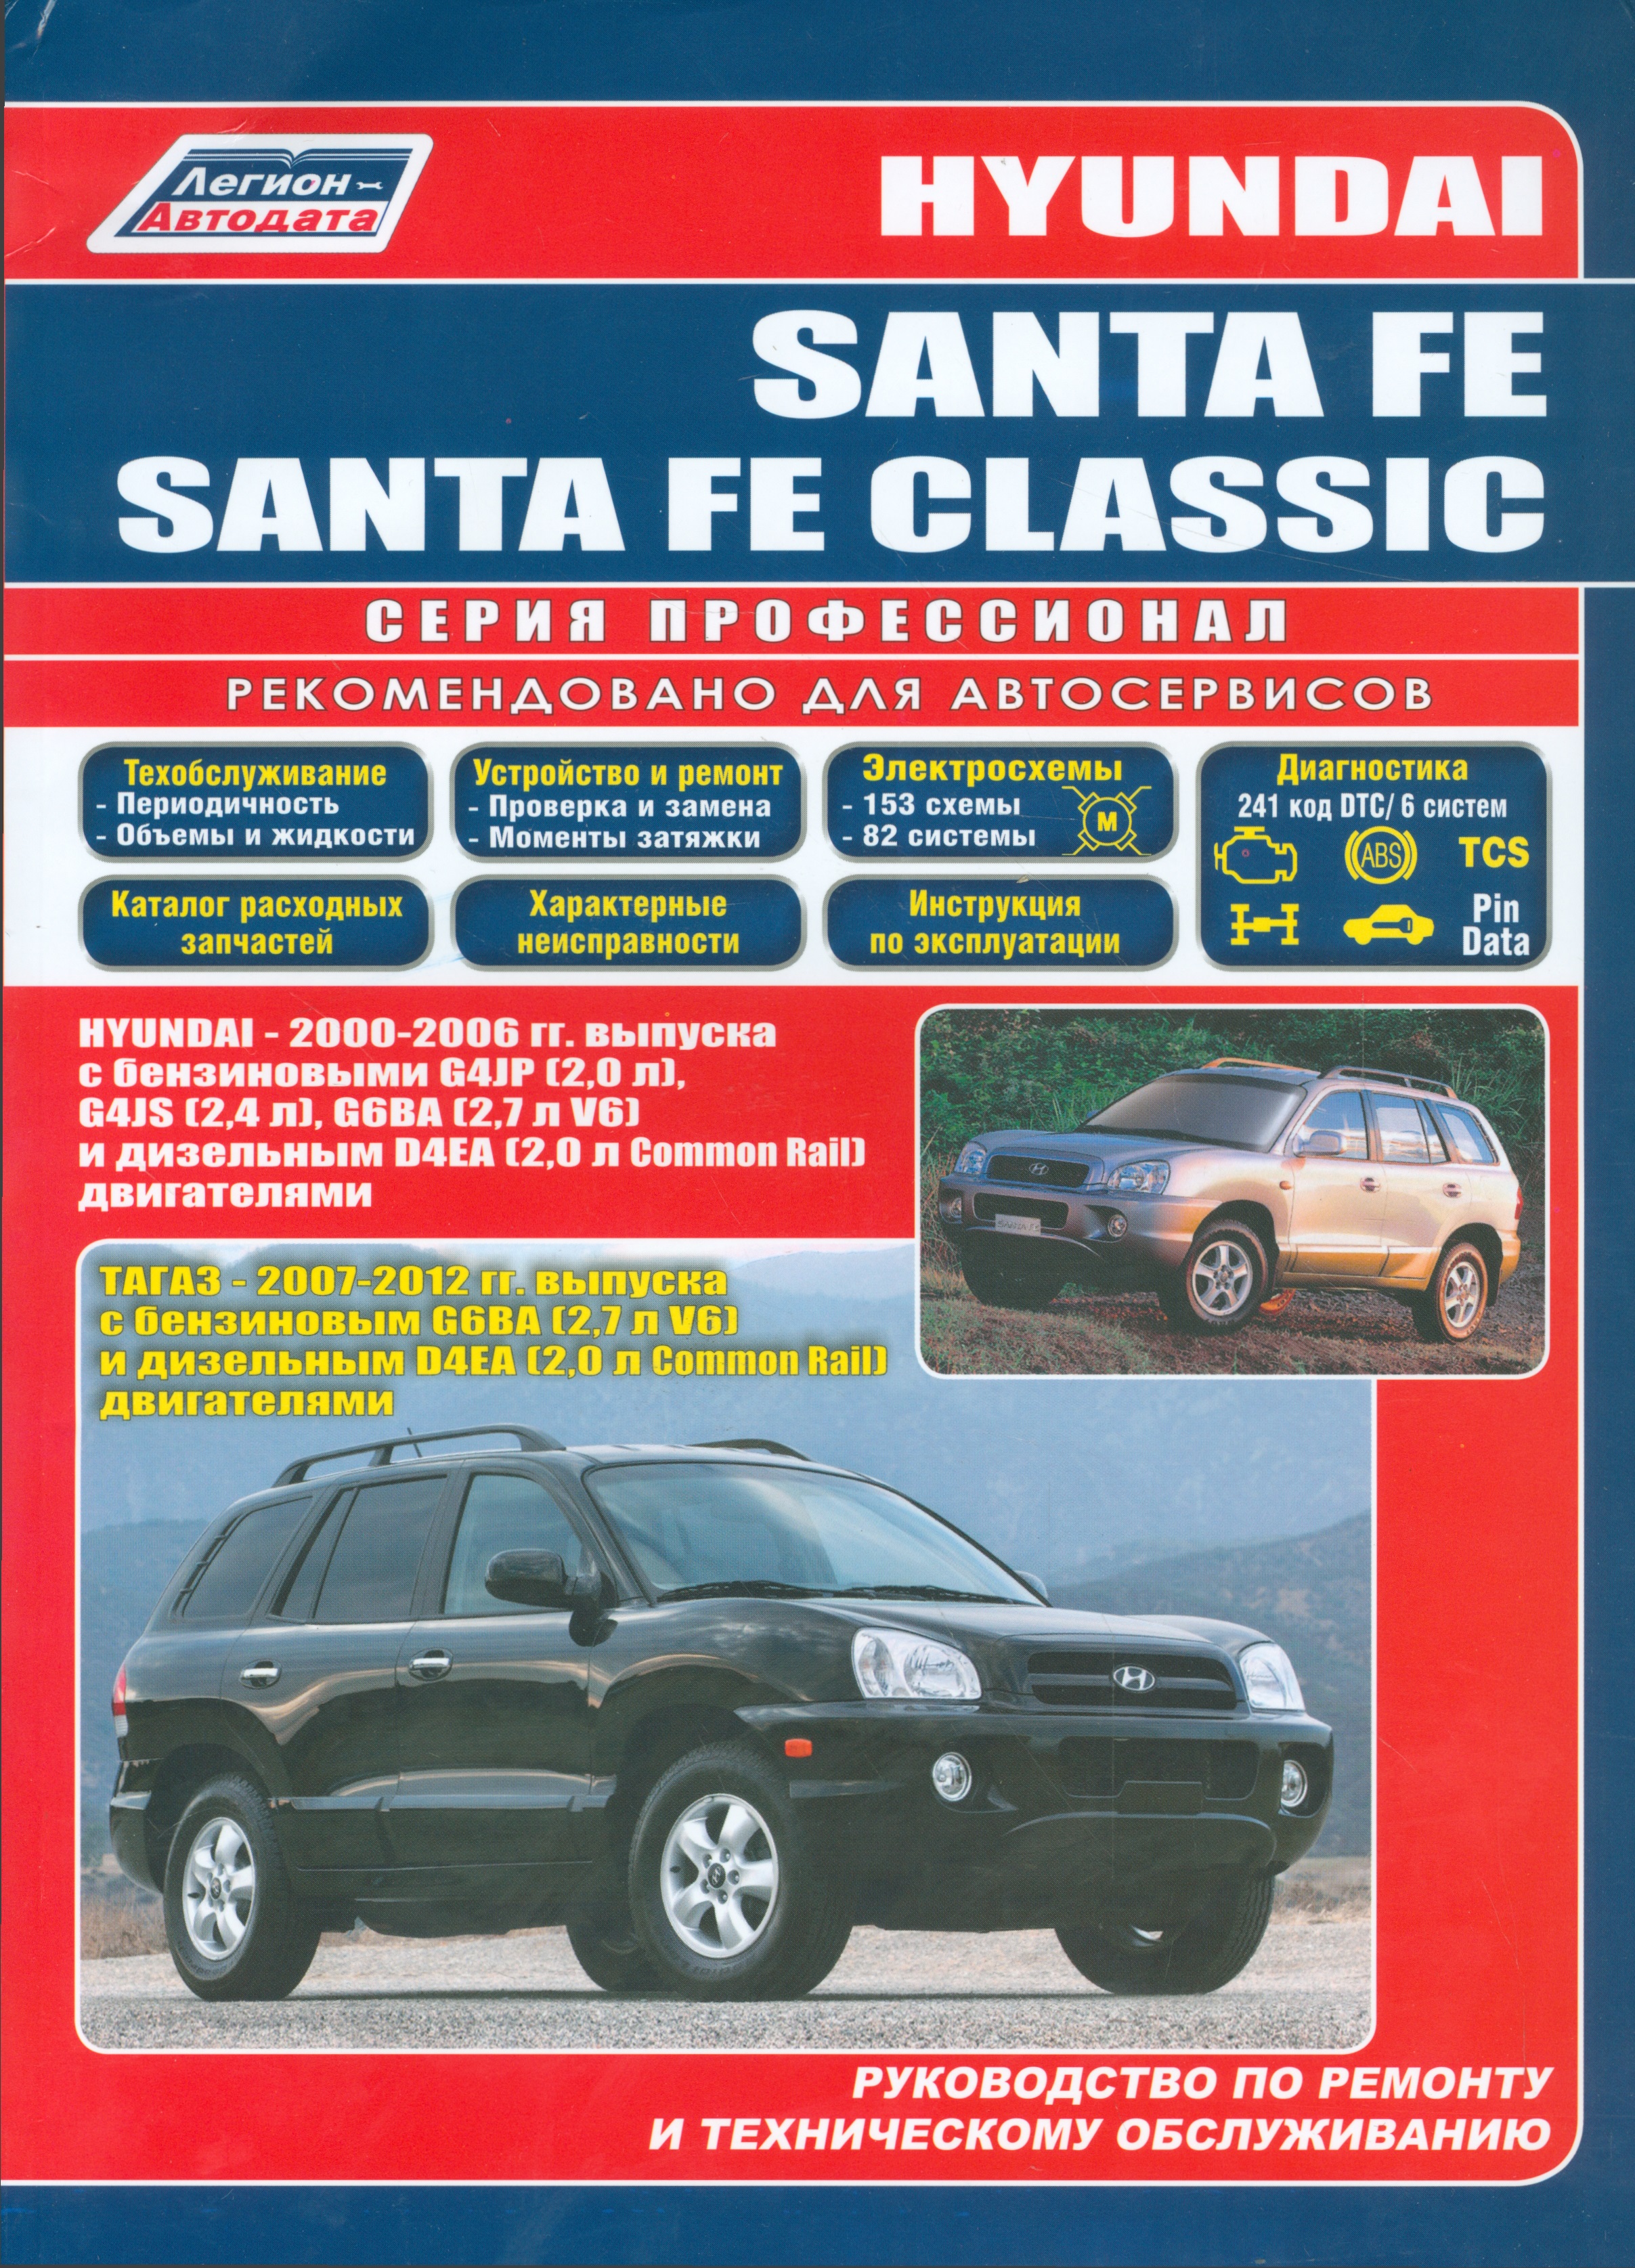 Hyundai SANTA FE SANTA FE Classic Hyundai 2000-2006 гг. вып. с бенз. G4JP (мПрофессионал) hyundai santa fe santa fe classic hyundai 2000 2006 гг вып с бенз g4jp мпрофессионал